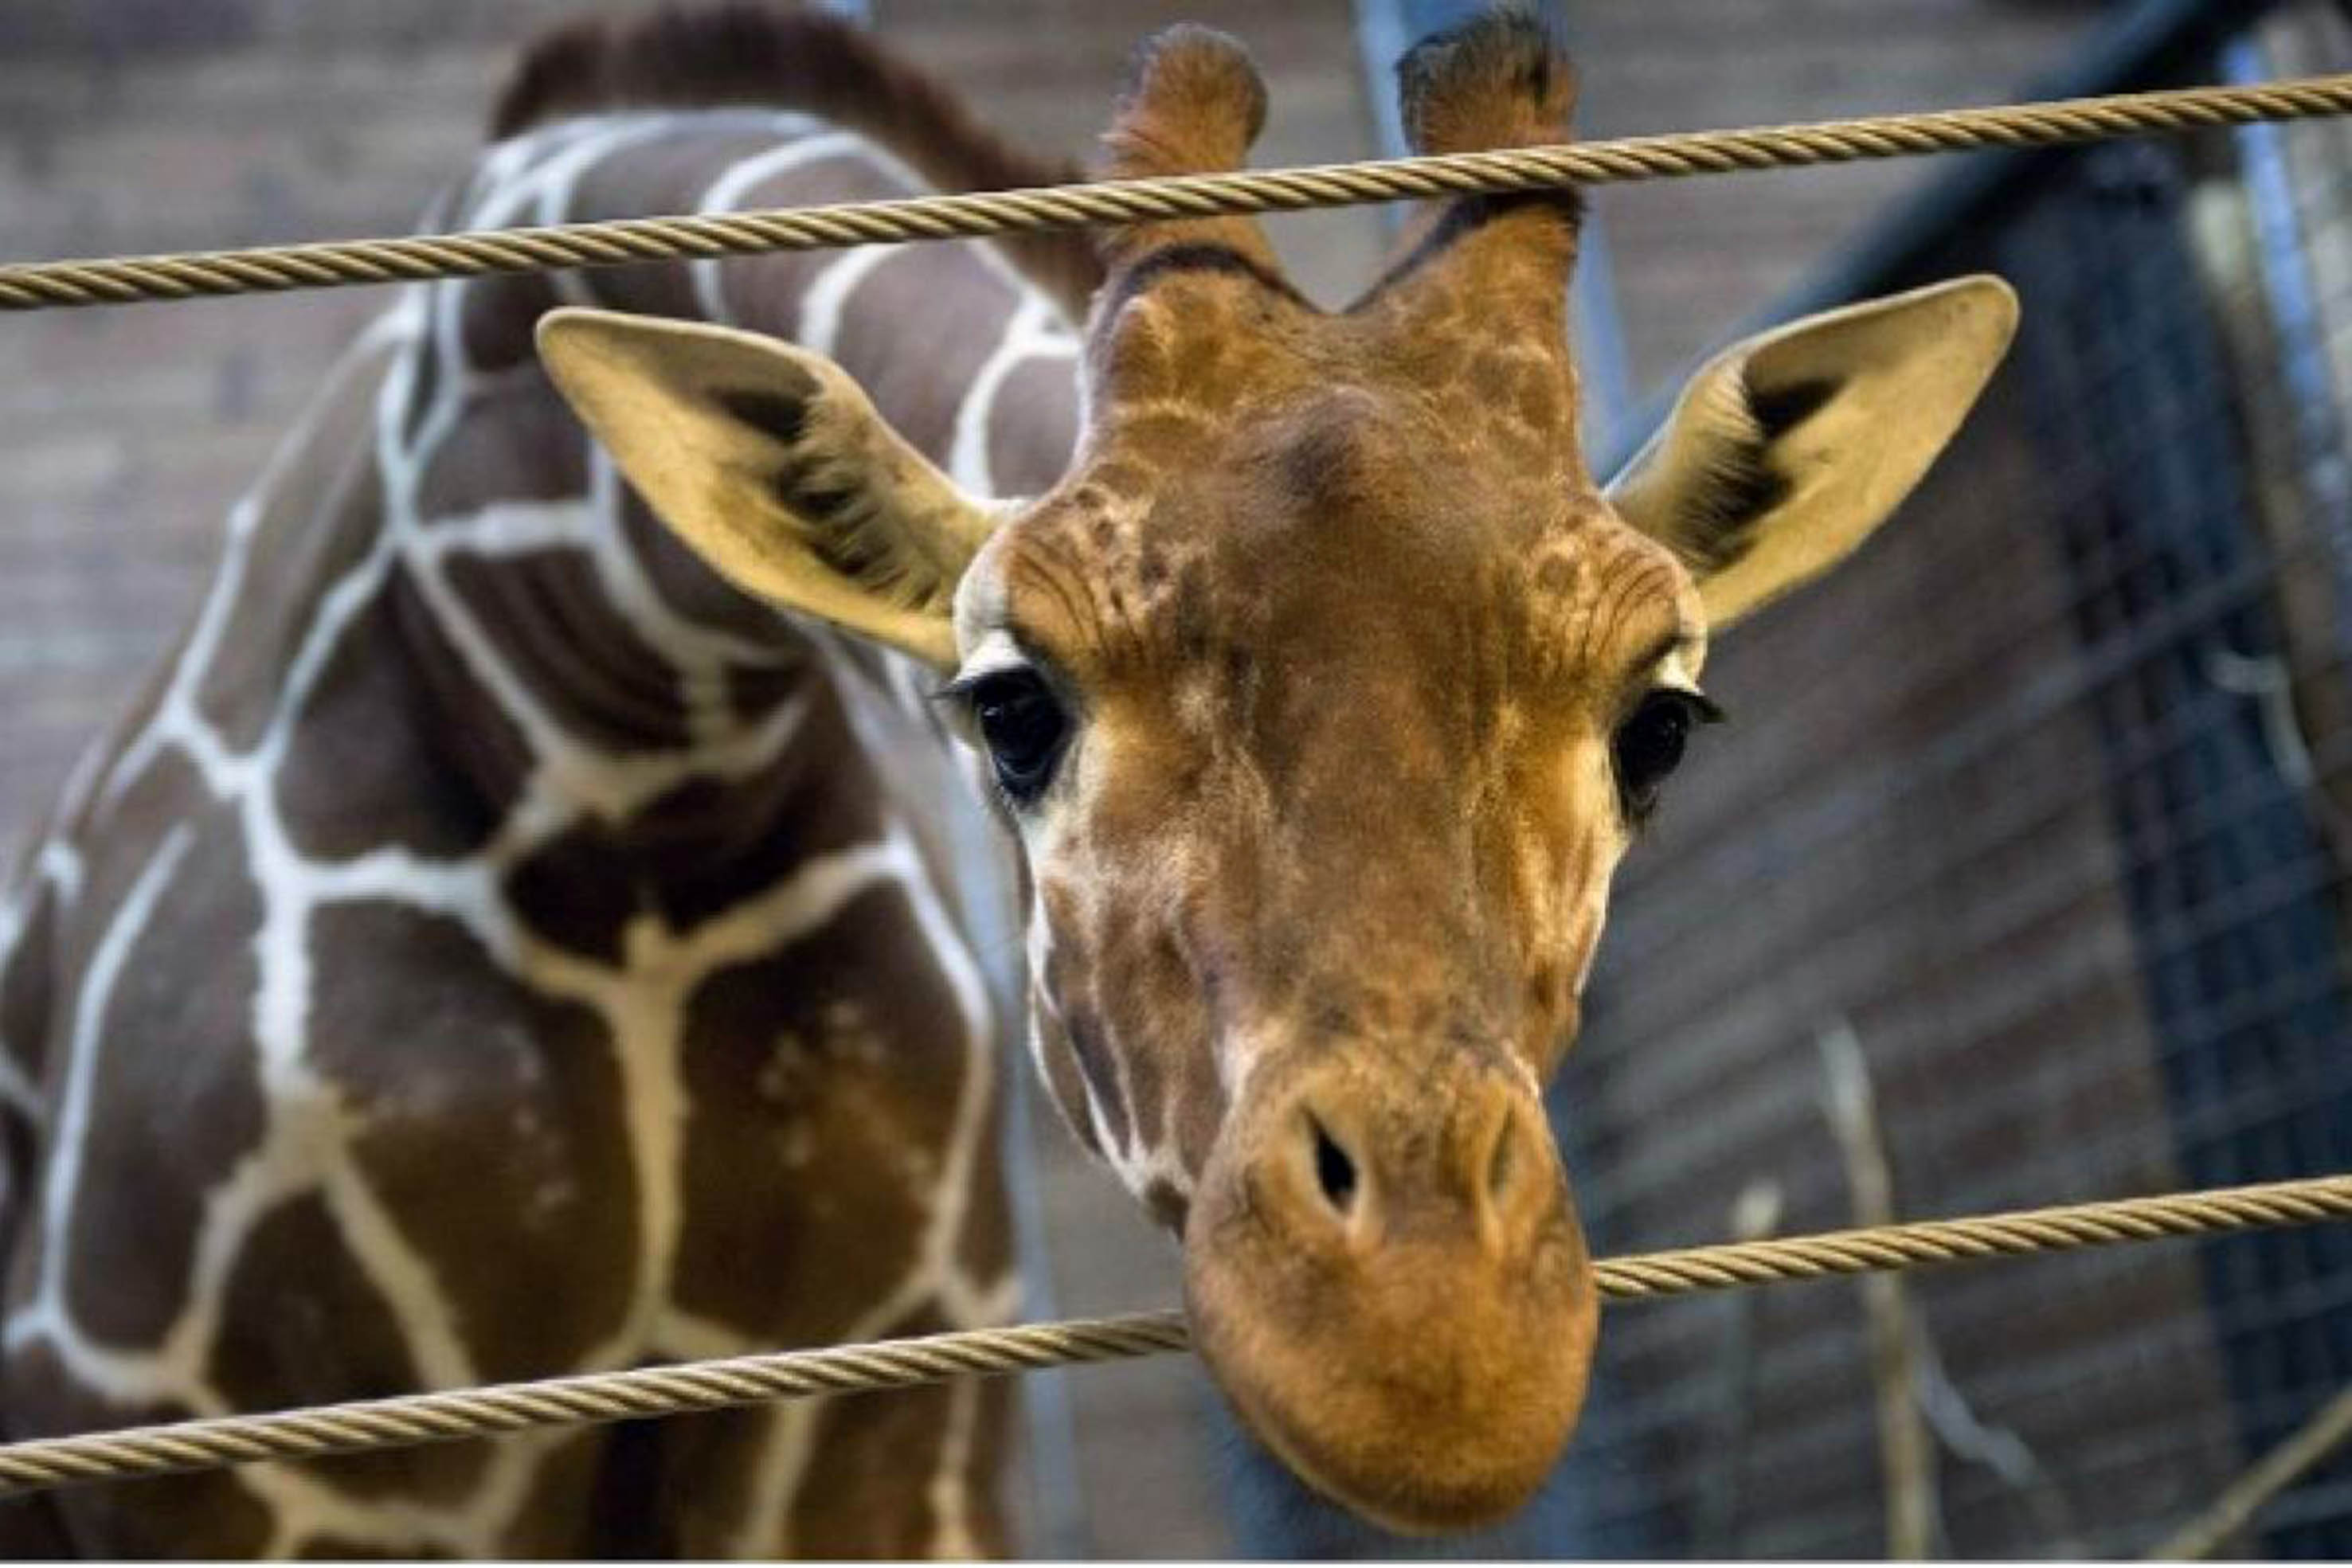 Un zoo contempla sacrificar animales durante el coronavirus para alimentar a otros 